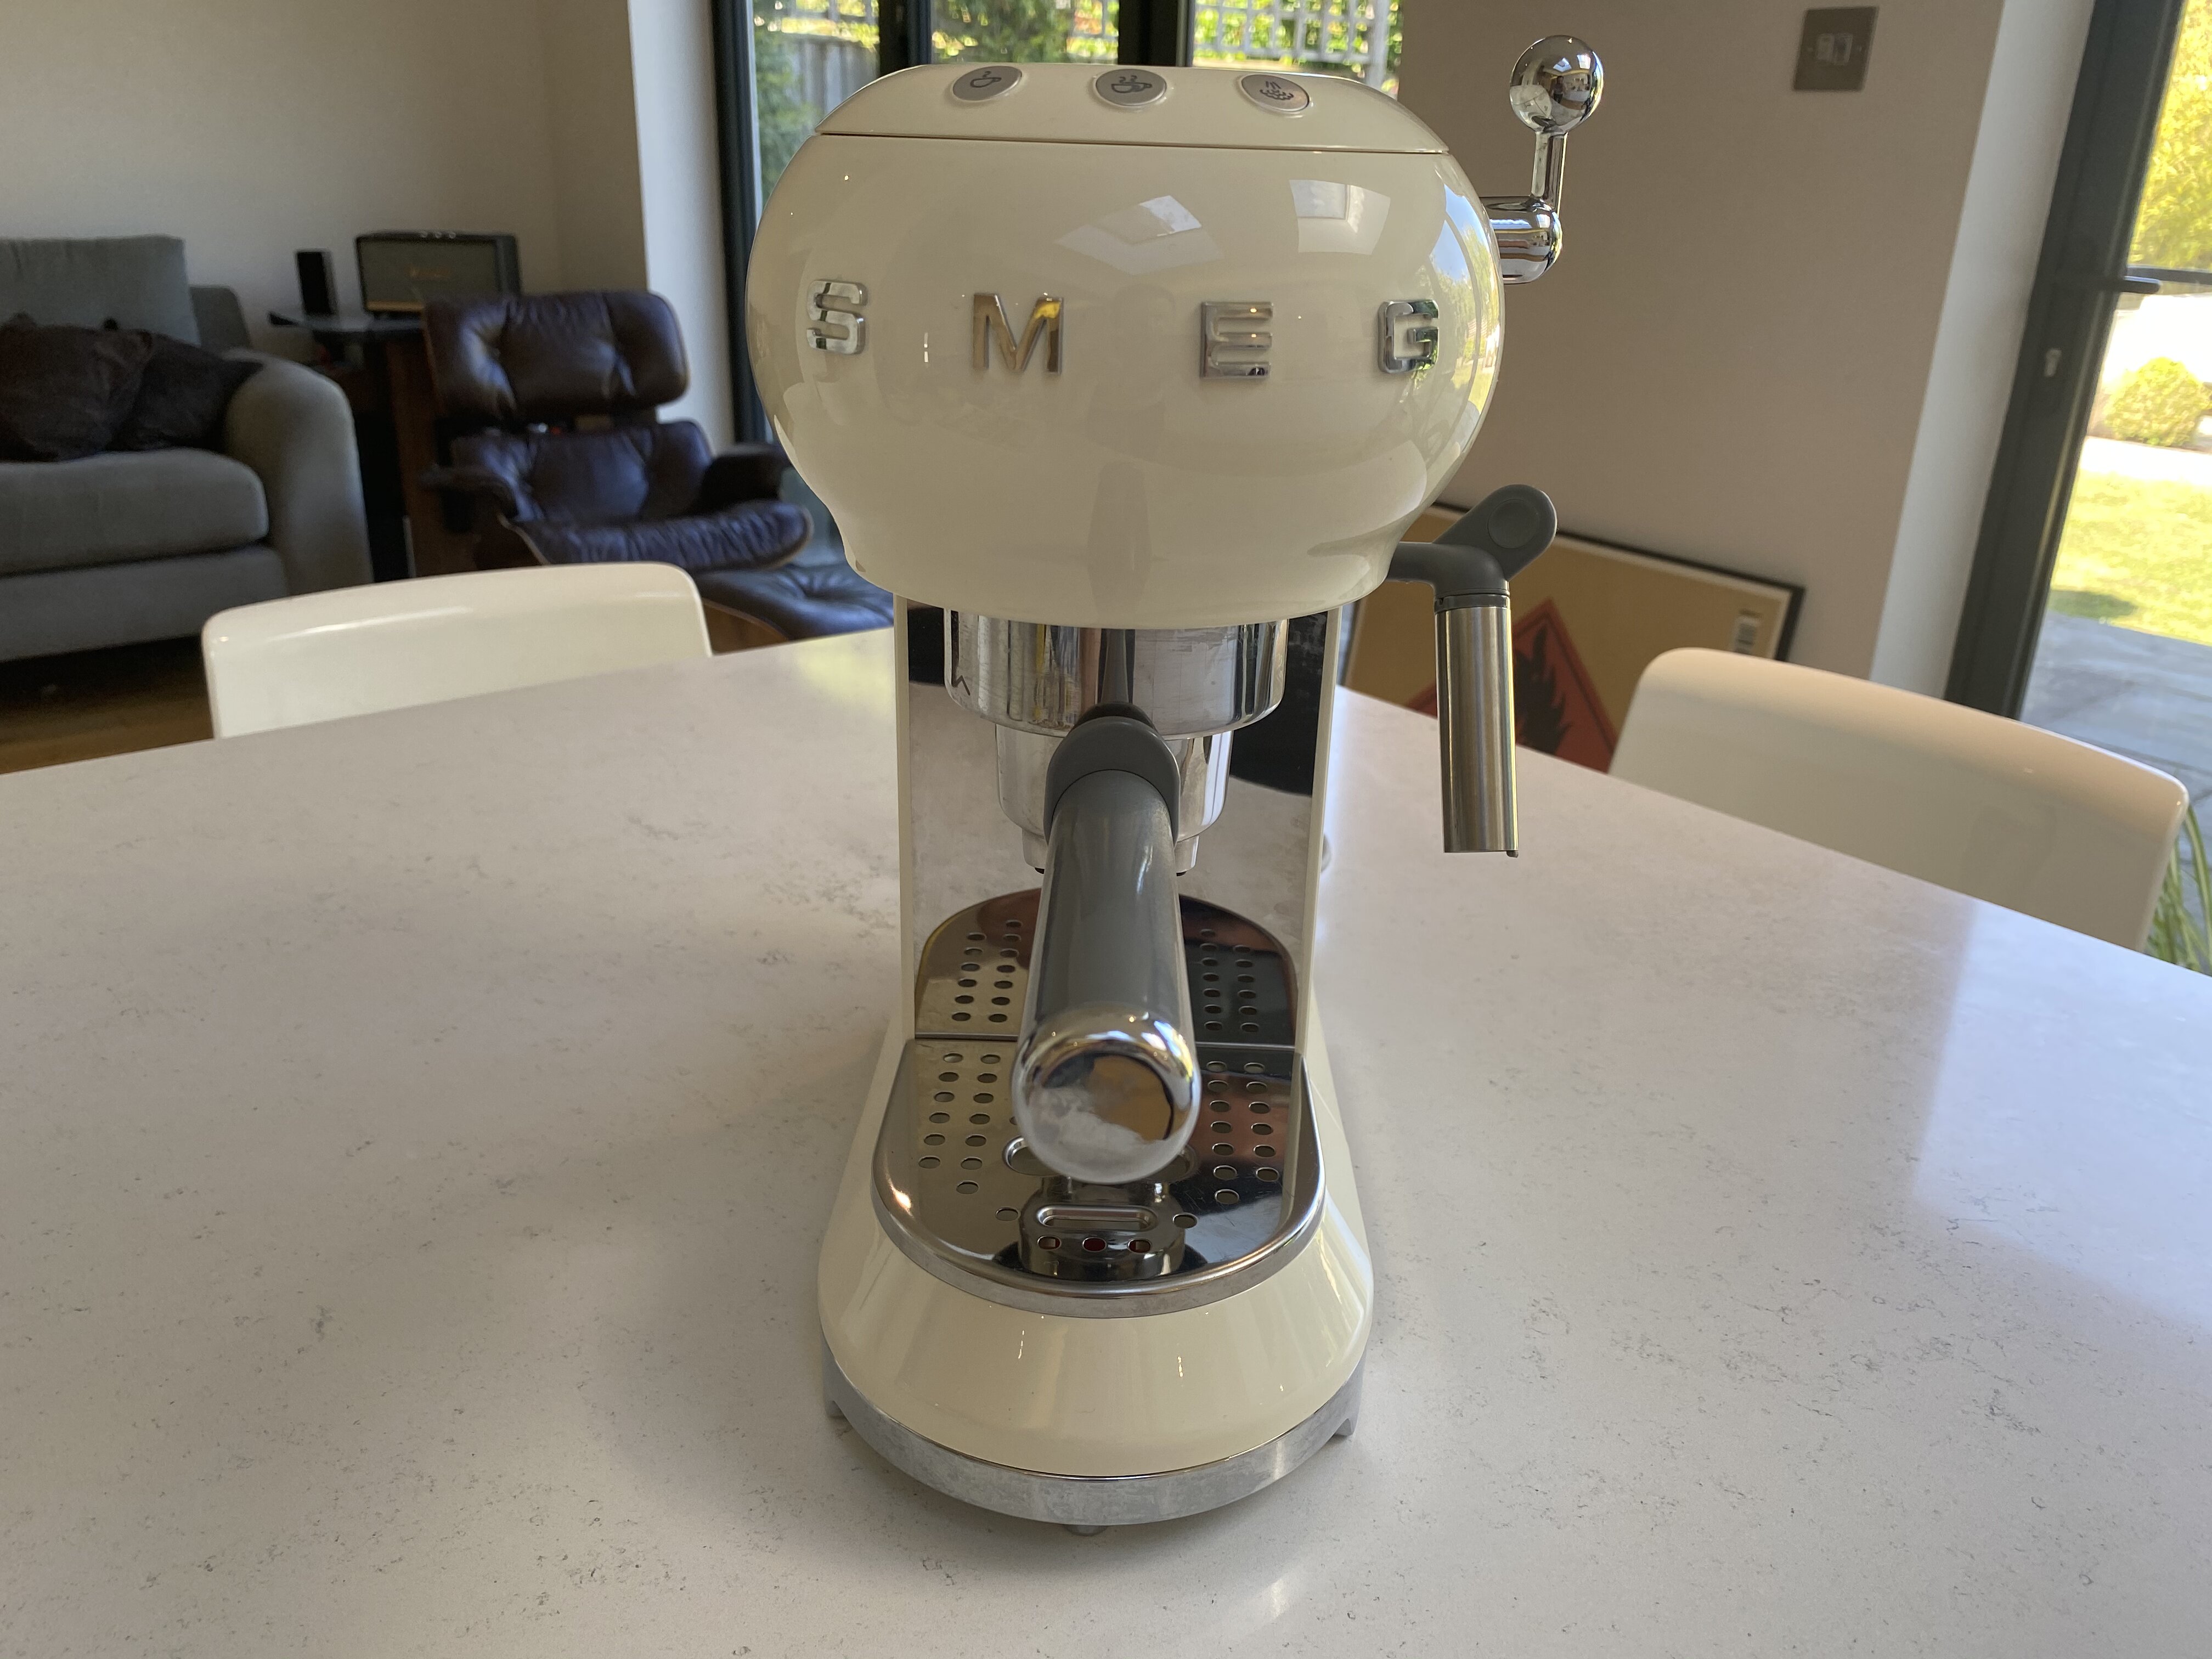 Verdict: Smeg ECF01 Espresso Coffee Machine